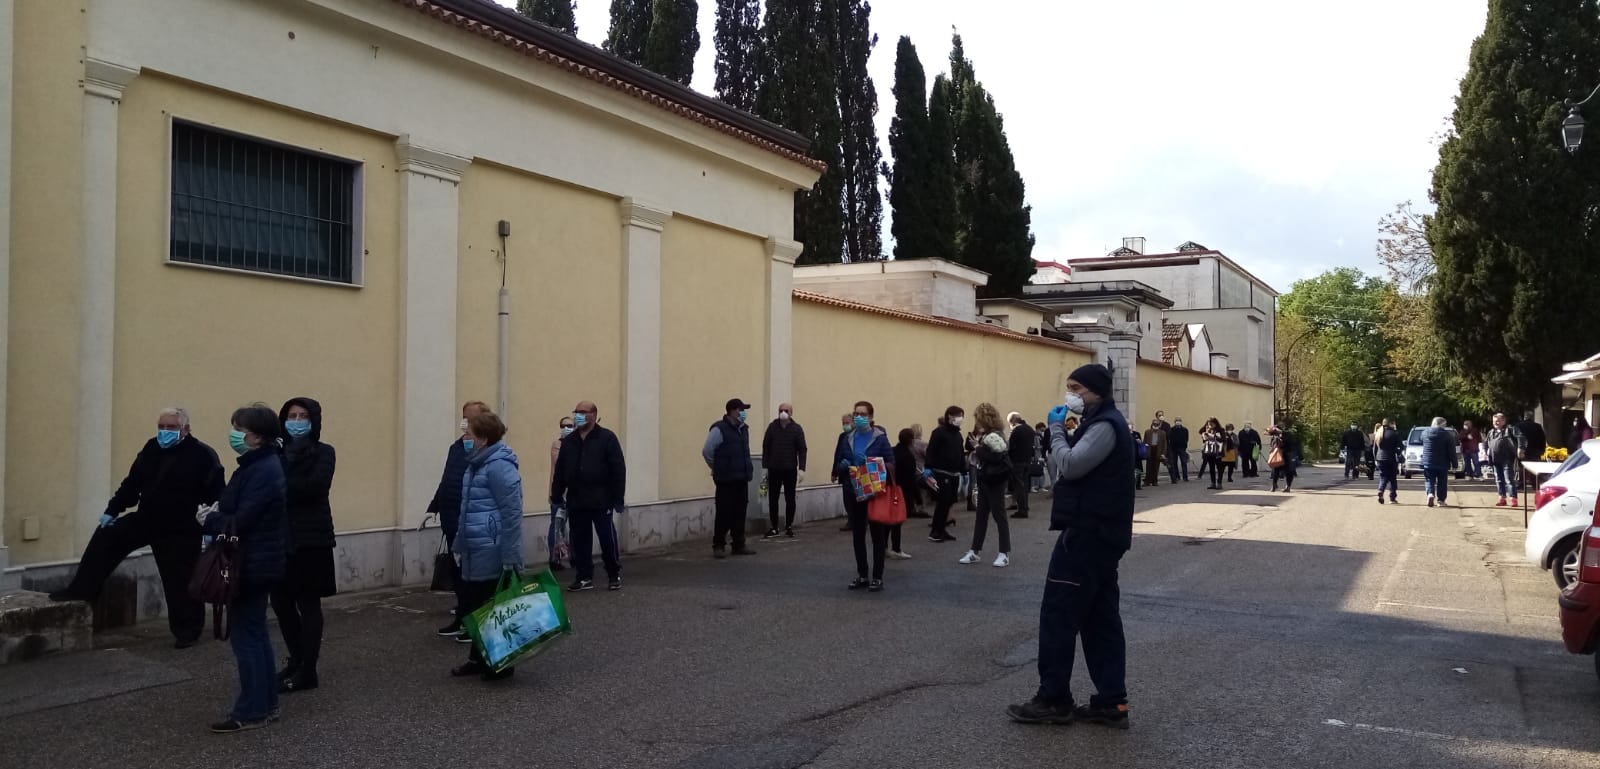 Avellino| Cimiteri civici riaperti da domani ma con ingressi scaglionati e rispetto delle misure anticovid